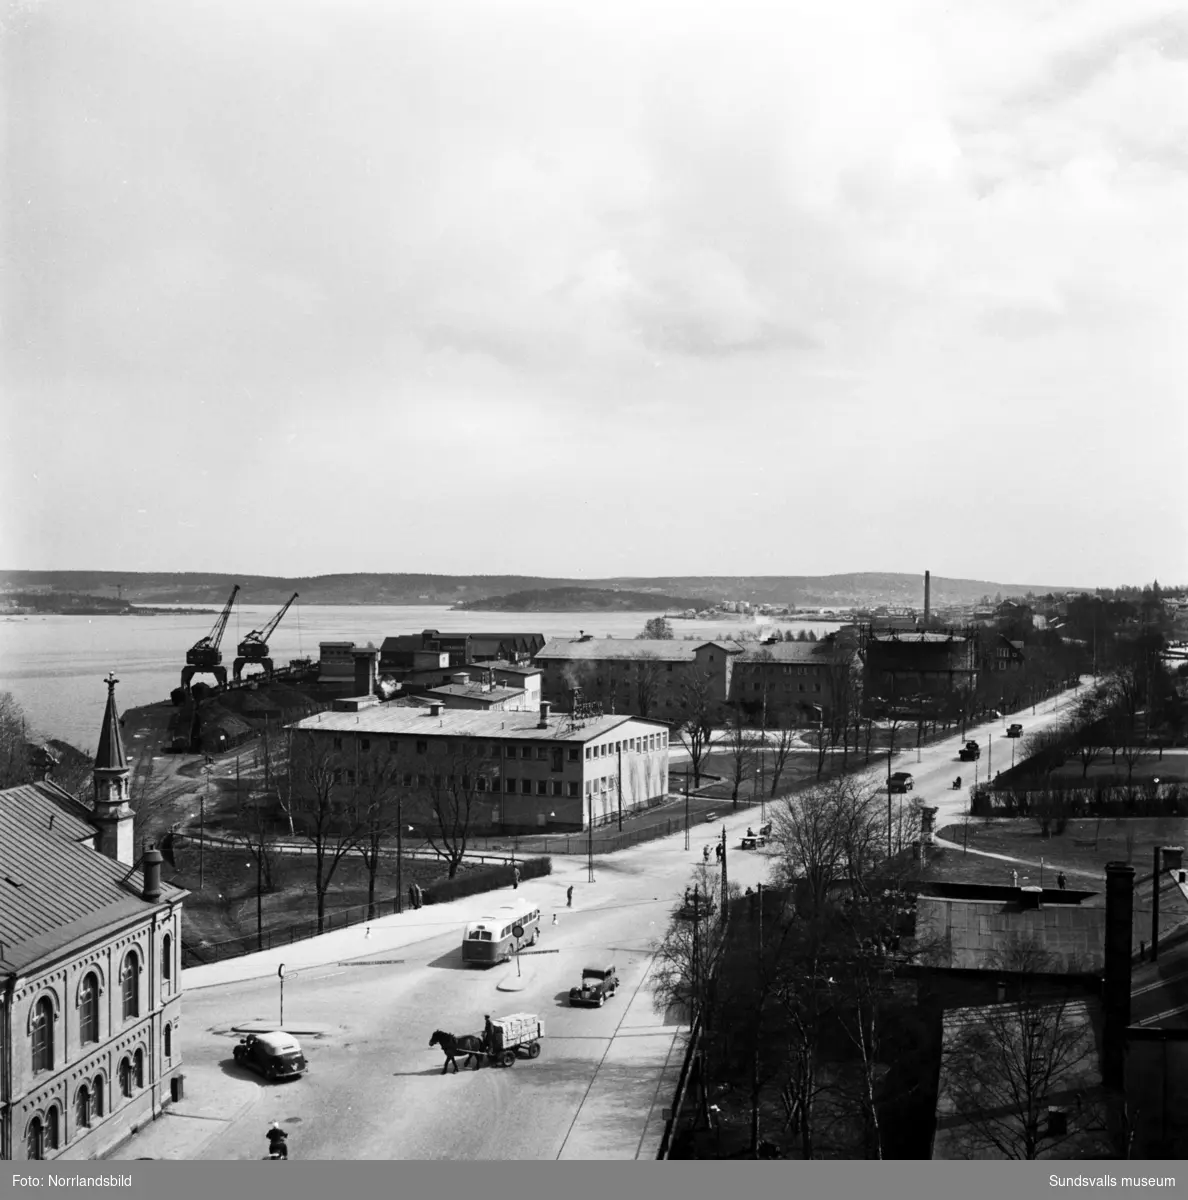 Vyer mot öster utmed Landsvägsallén fotograferade från bygget av Dagbladets fastighet vid Köpmangatan 1. Hästekipage, bilar och bussar samsas på gatorna. KPS, Coronabageriet och den stora gasklockan i mitten av bilderna.